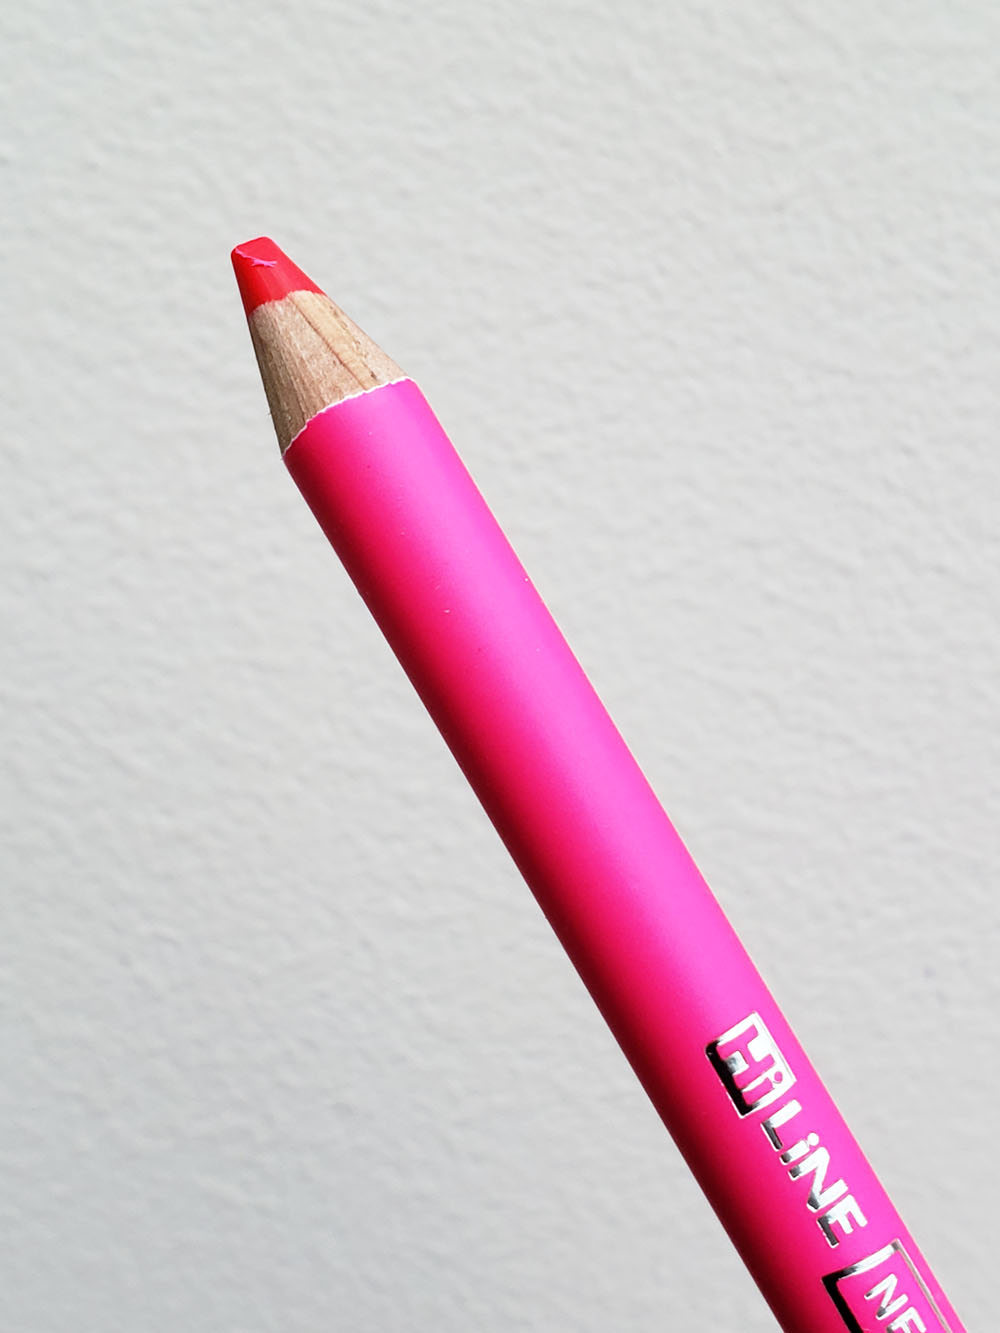 Efterforskning Tjen hvede Highlighter Review: Kutsuwa HiLiNE Highlighter Pencil - The Well-Appointed  Desk